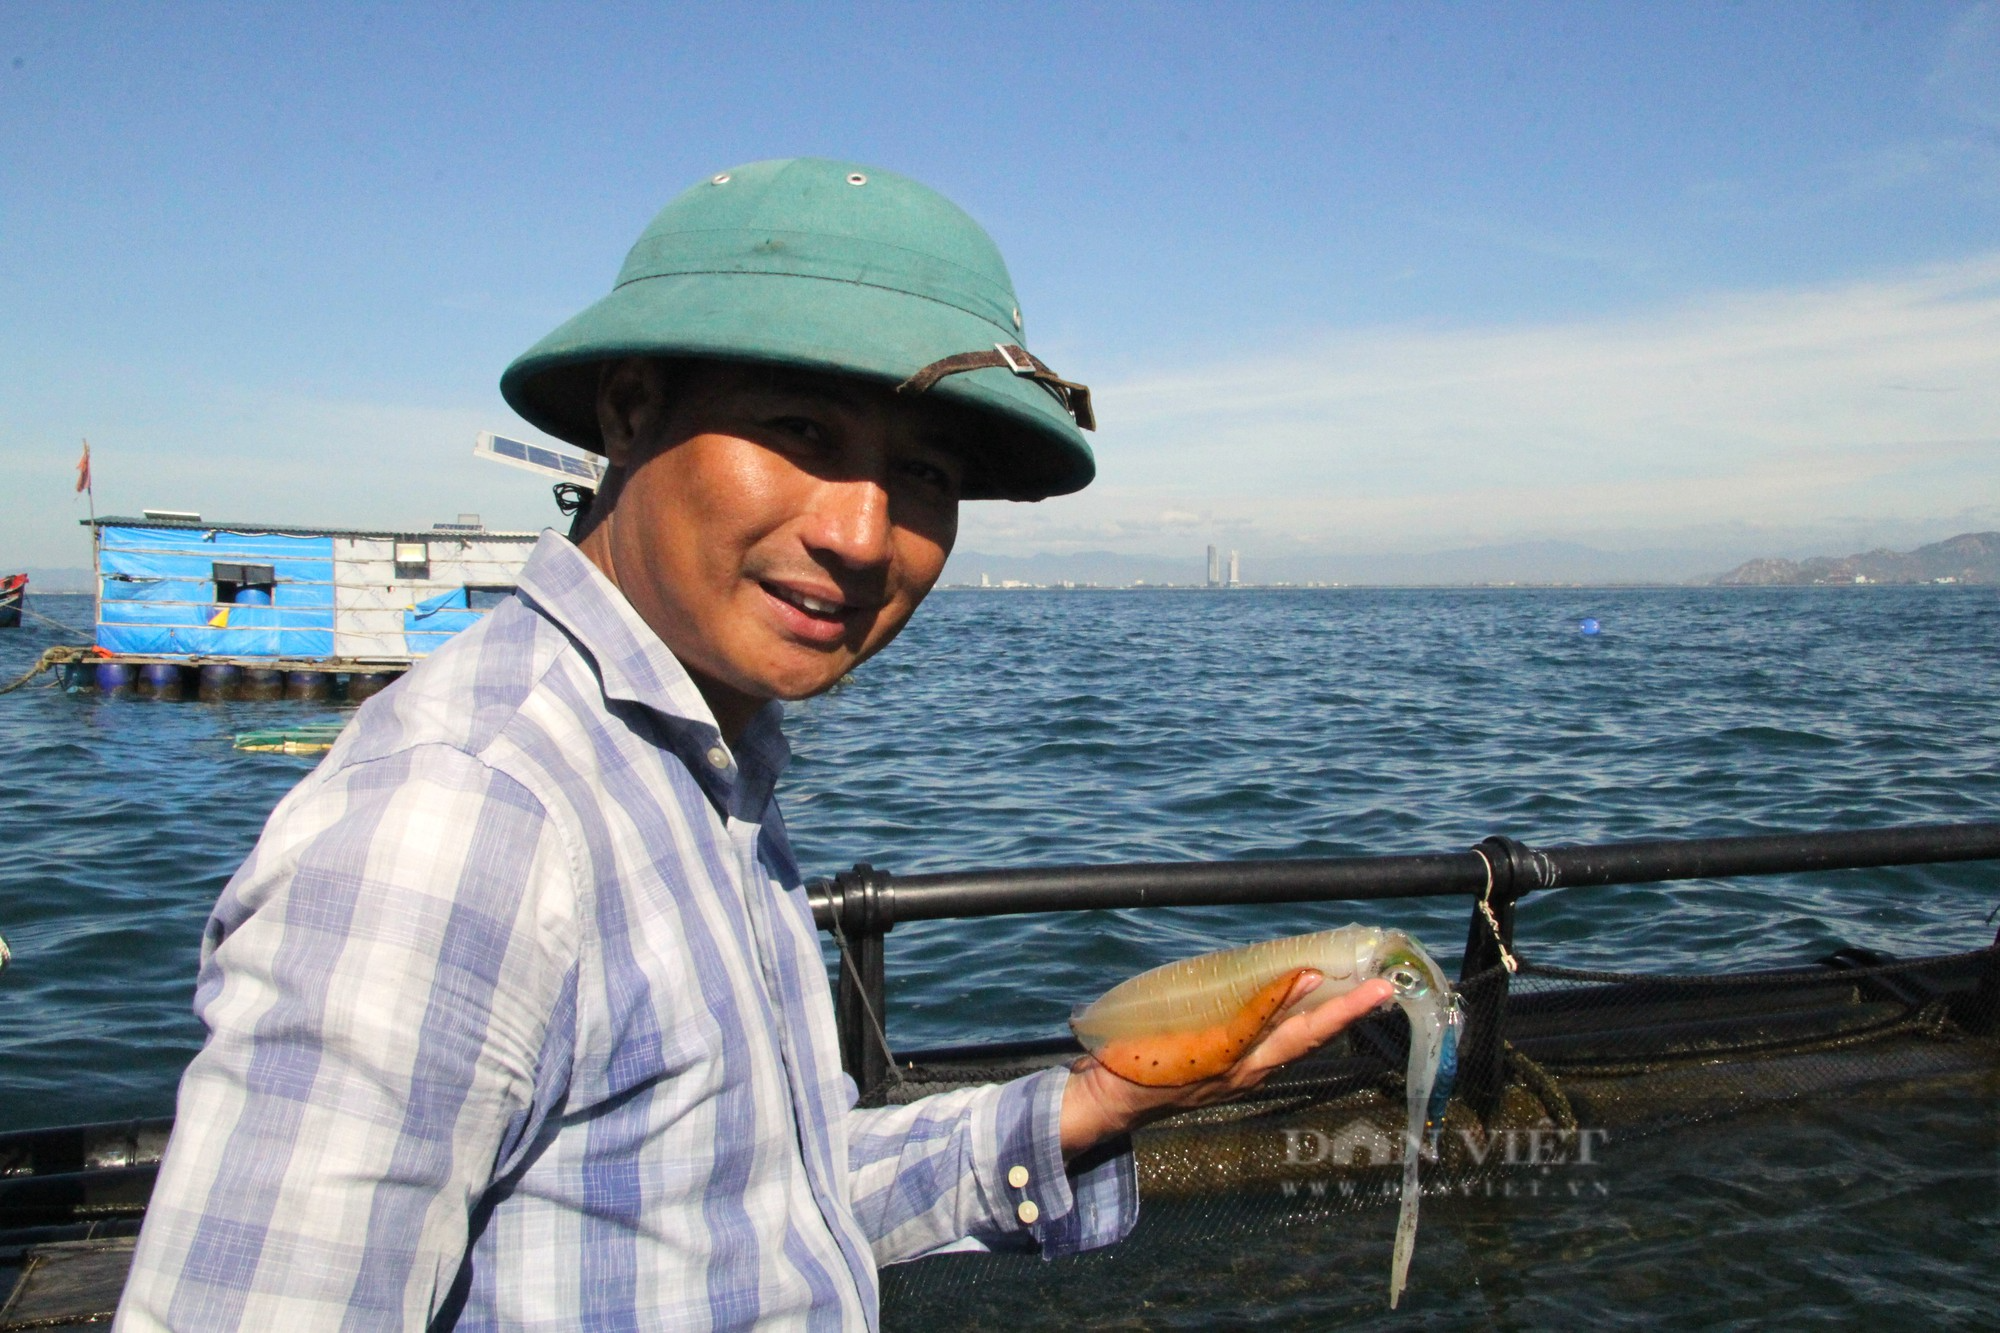 Ngư dân nuôi thành công mực sinh sản trong môi trường bán tự nhiên đầu tiên Việt Nam ở Ninh Thuận - Ảnh 1.